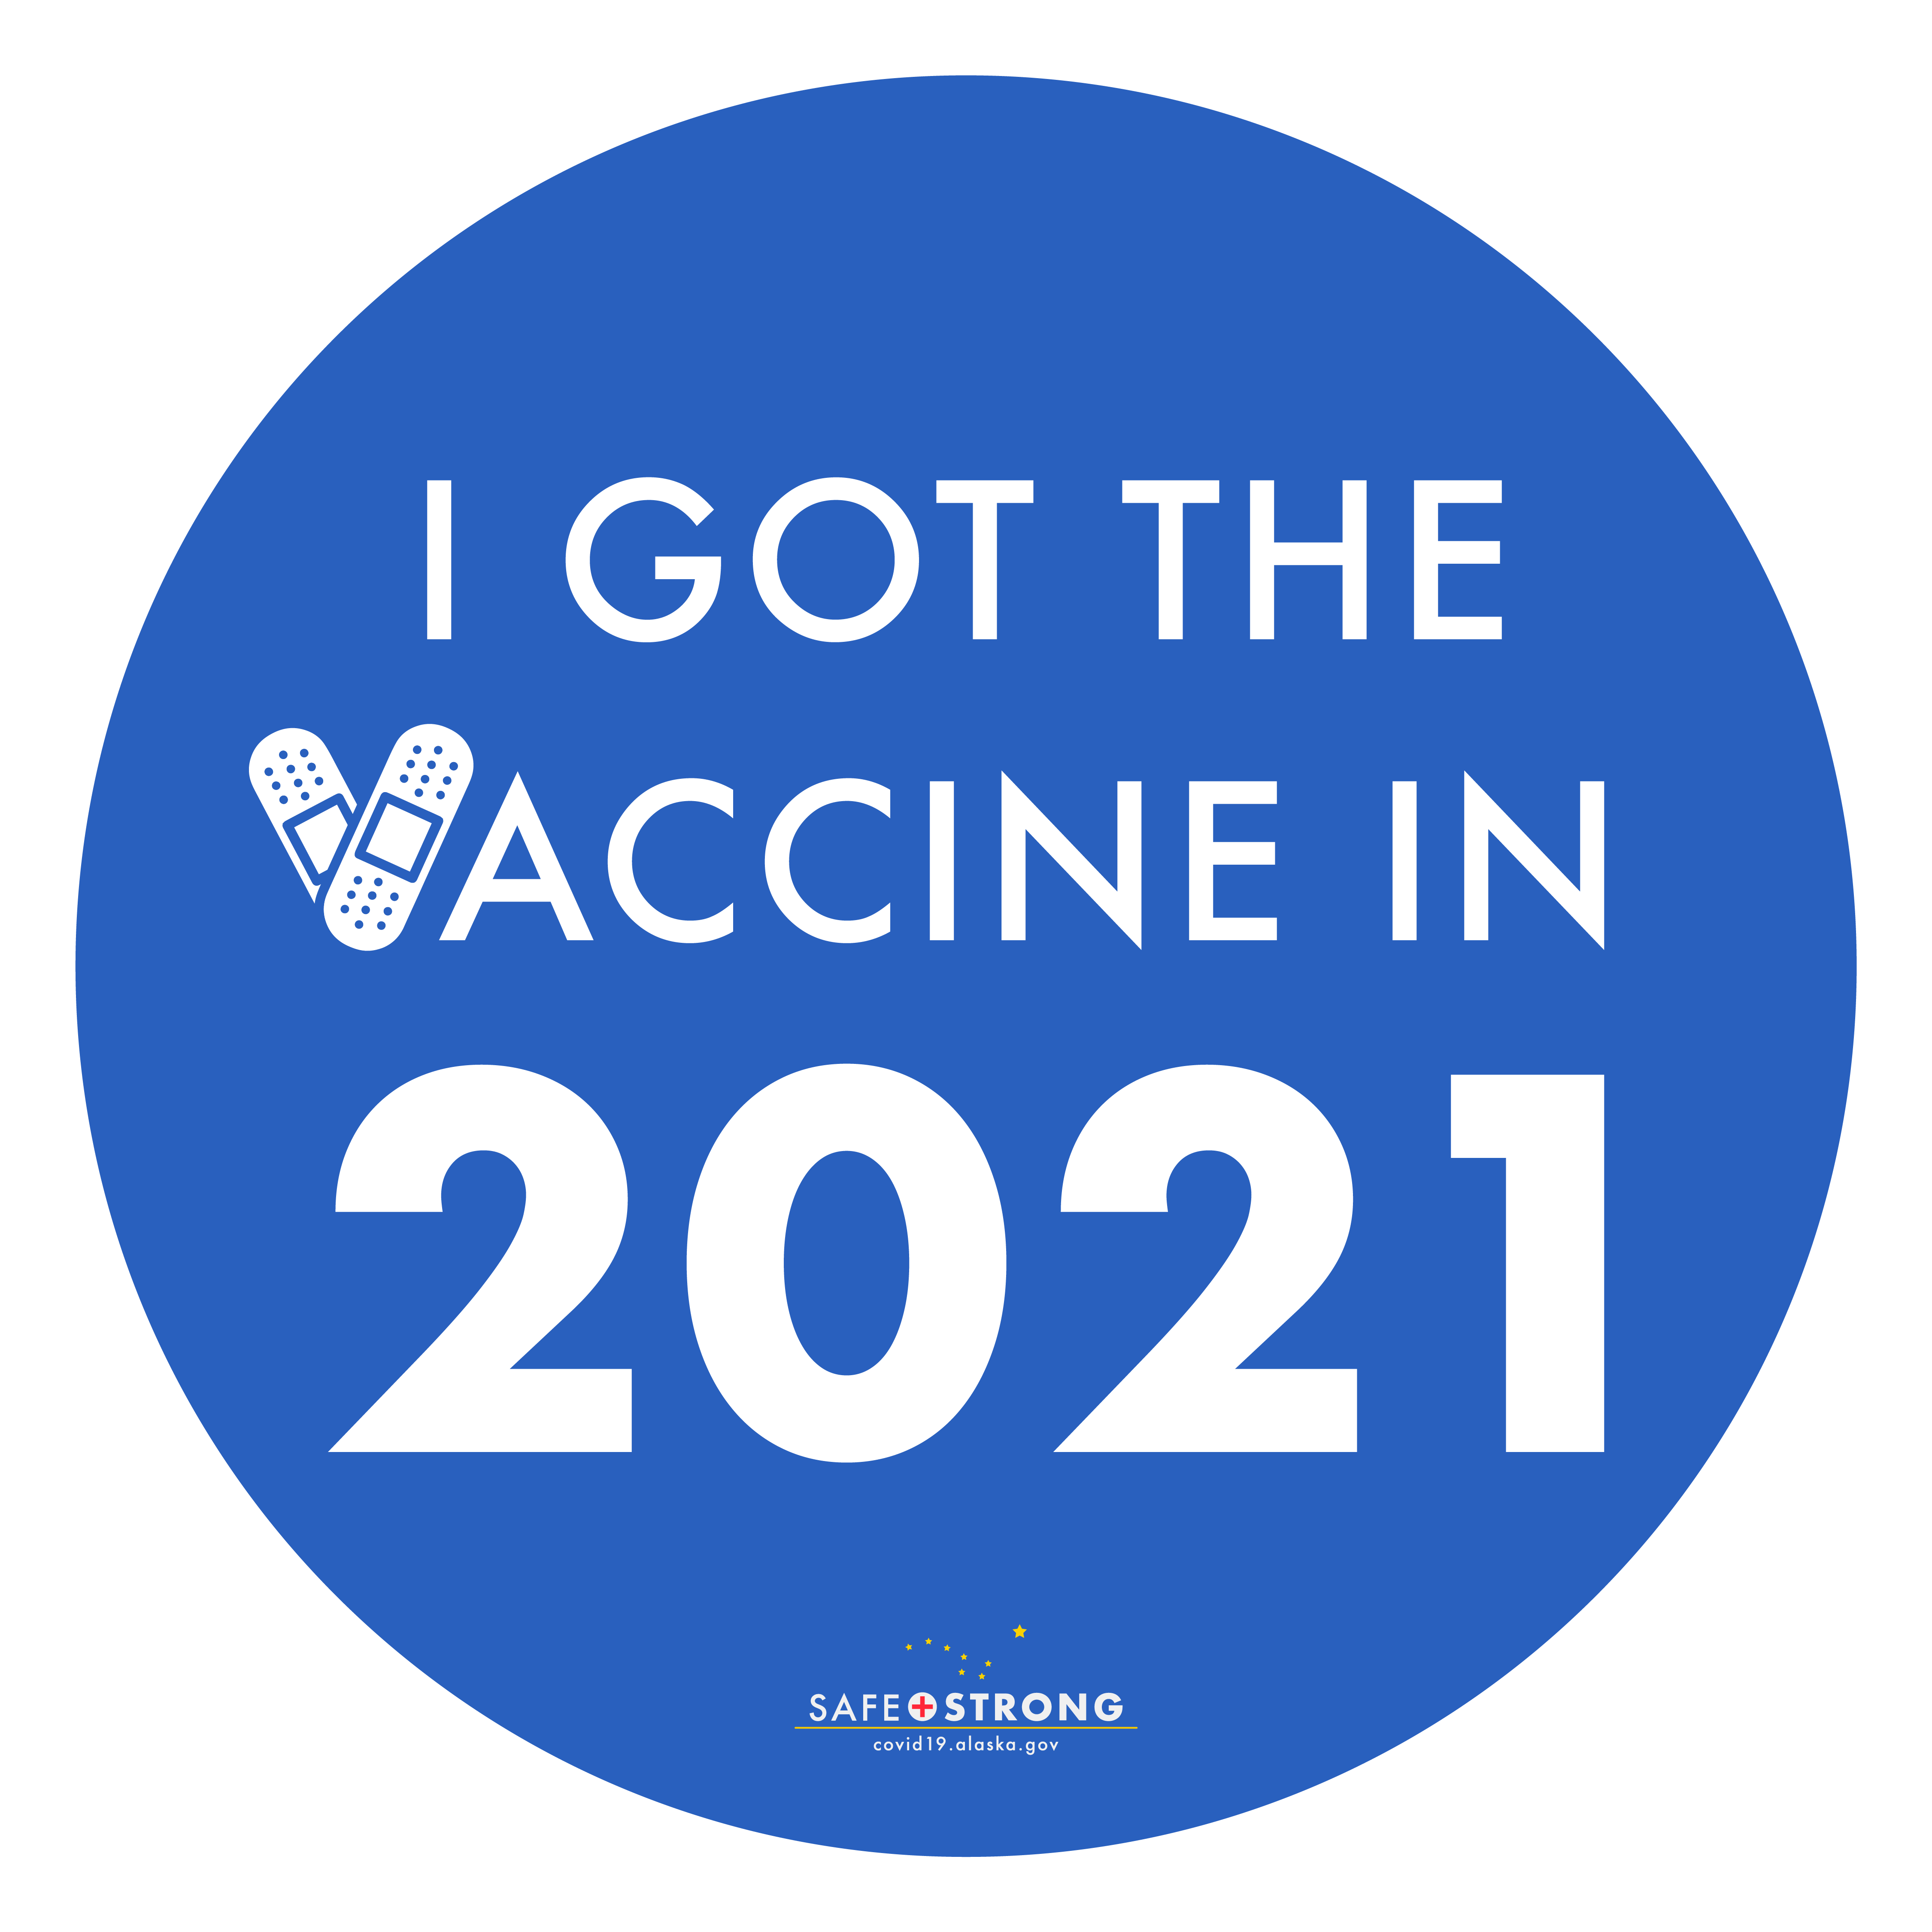 I got the vaccine in 2021